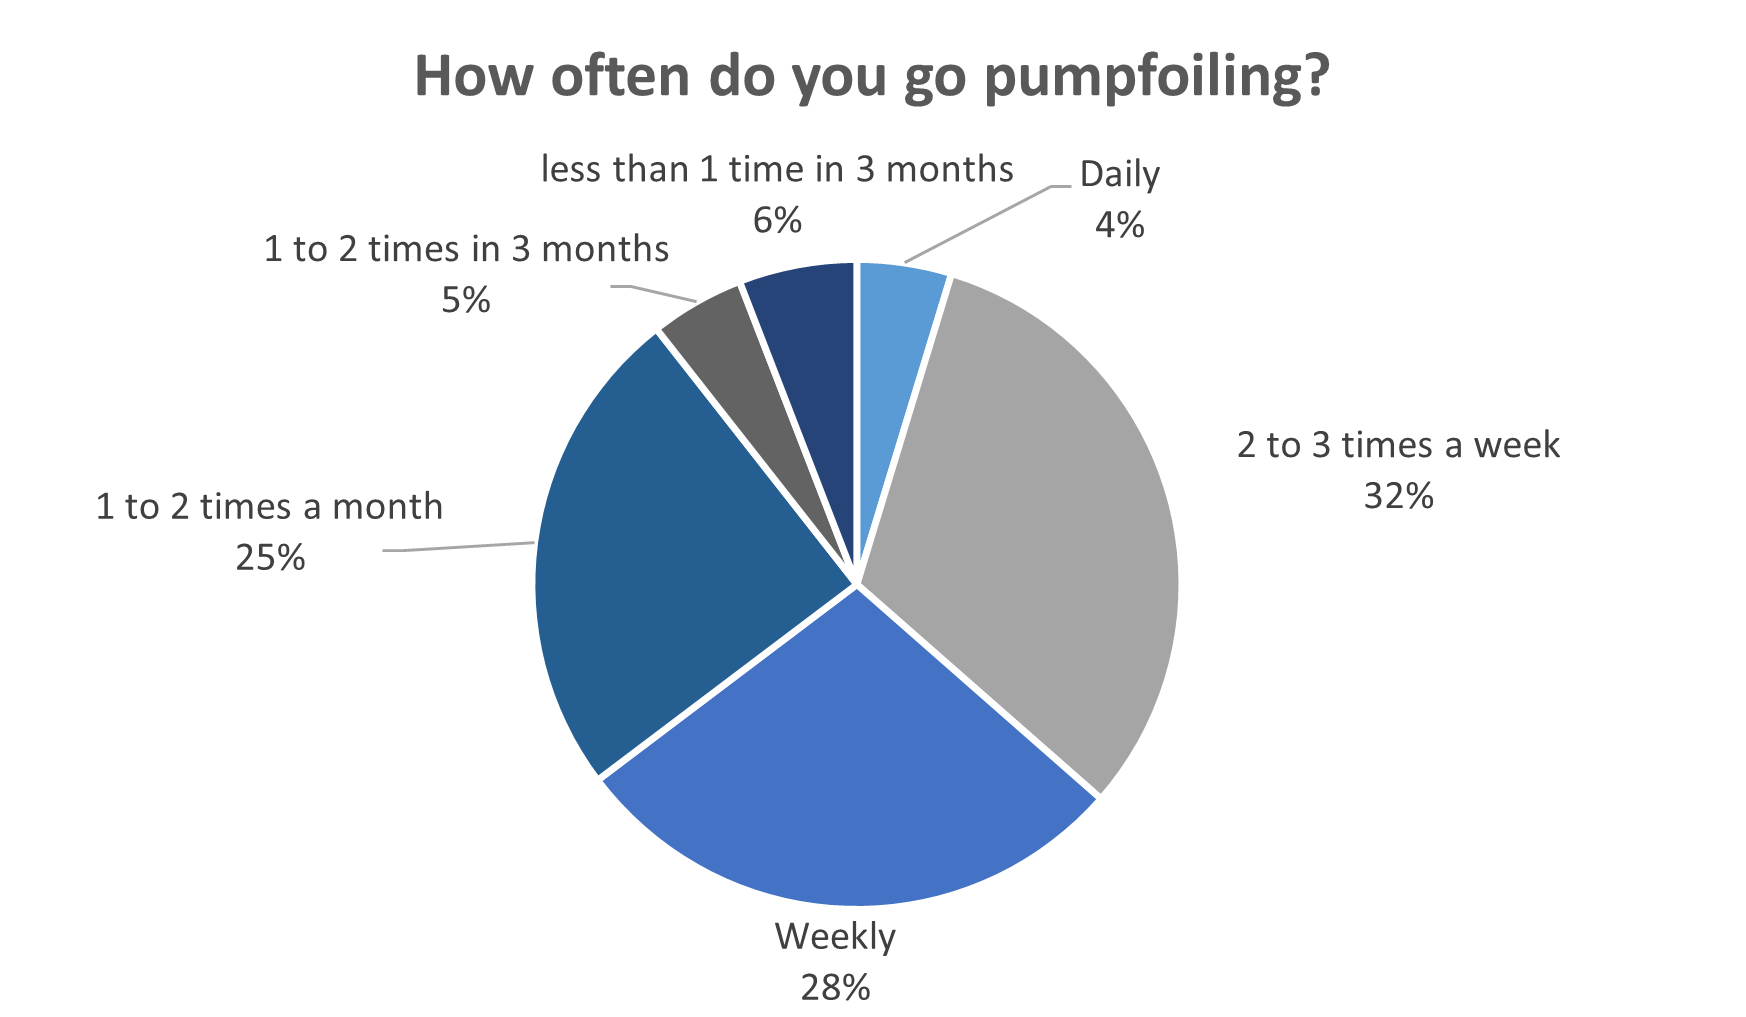 How often do you go pumpfoiling?